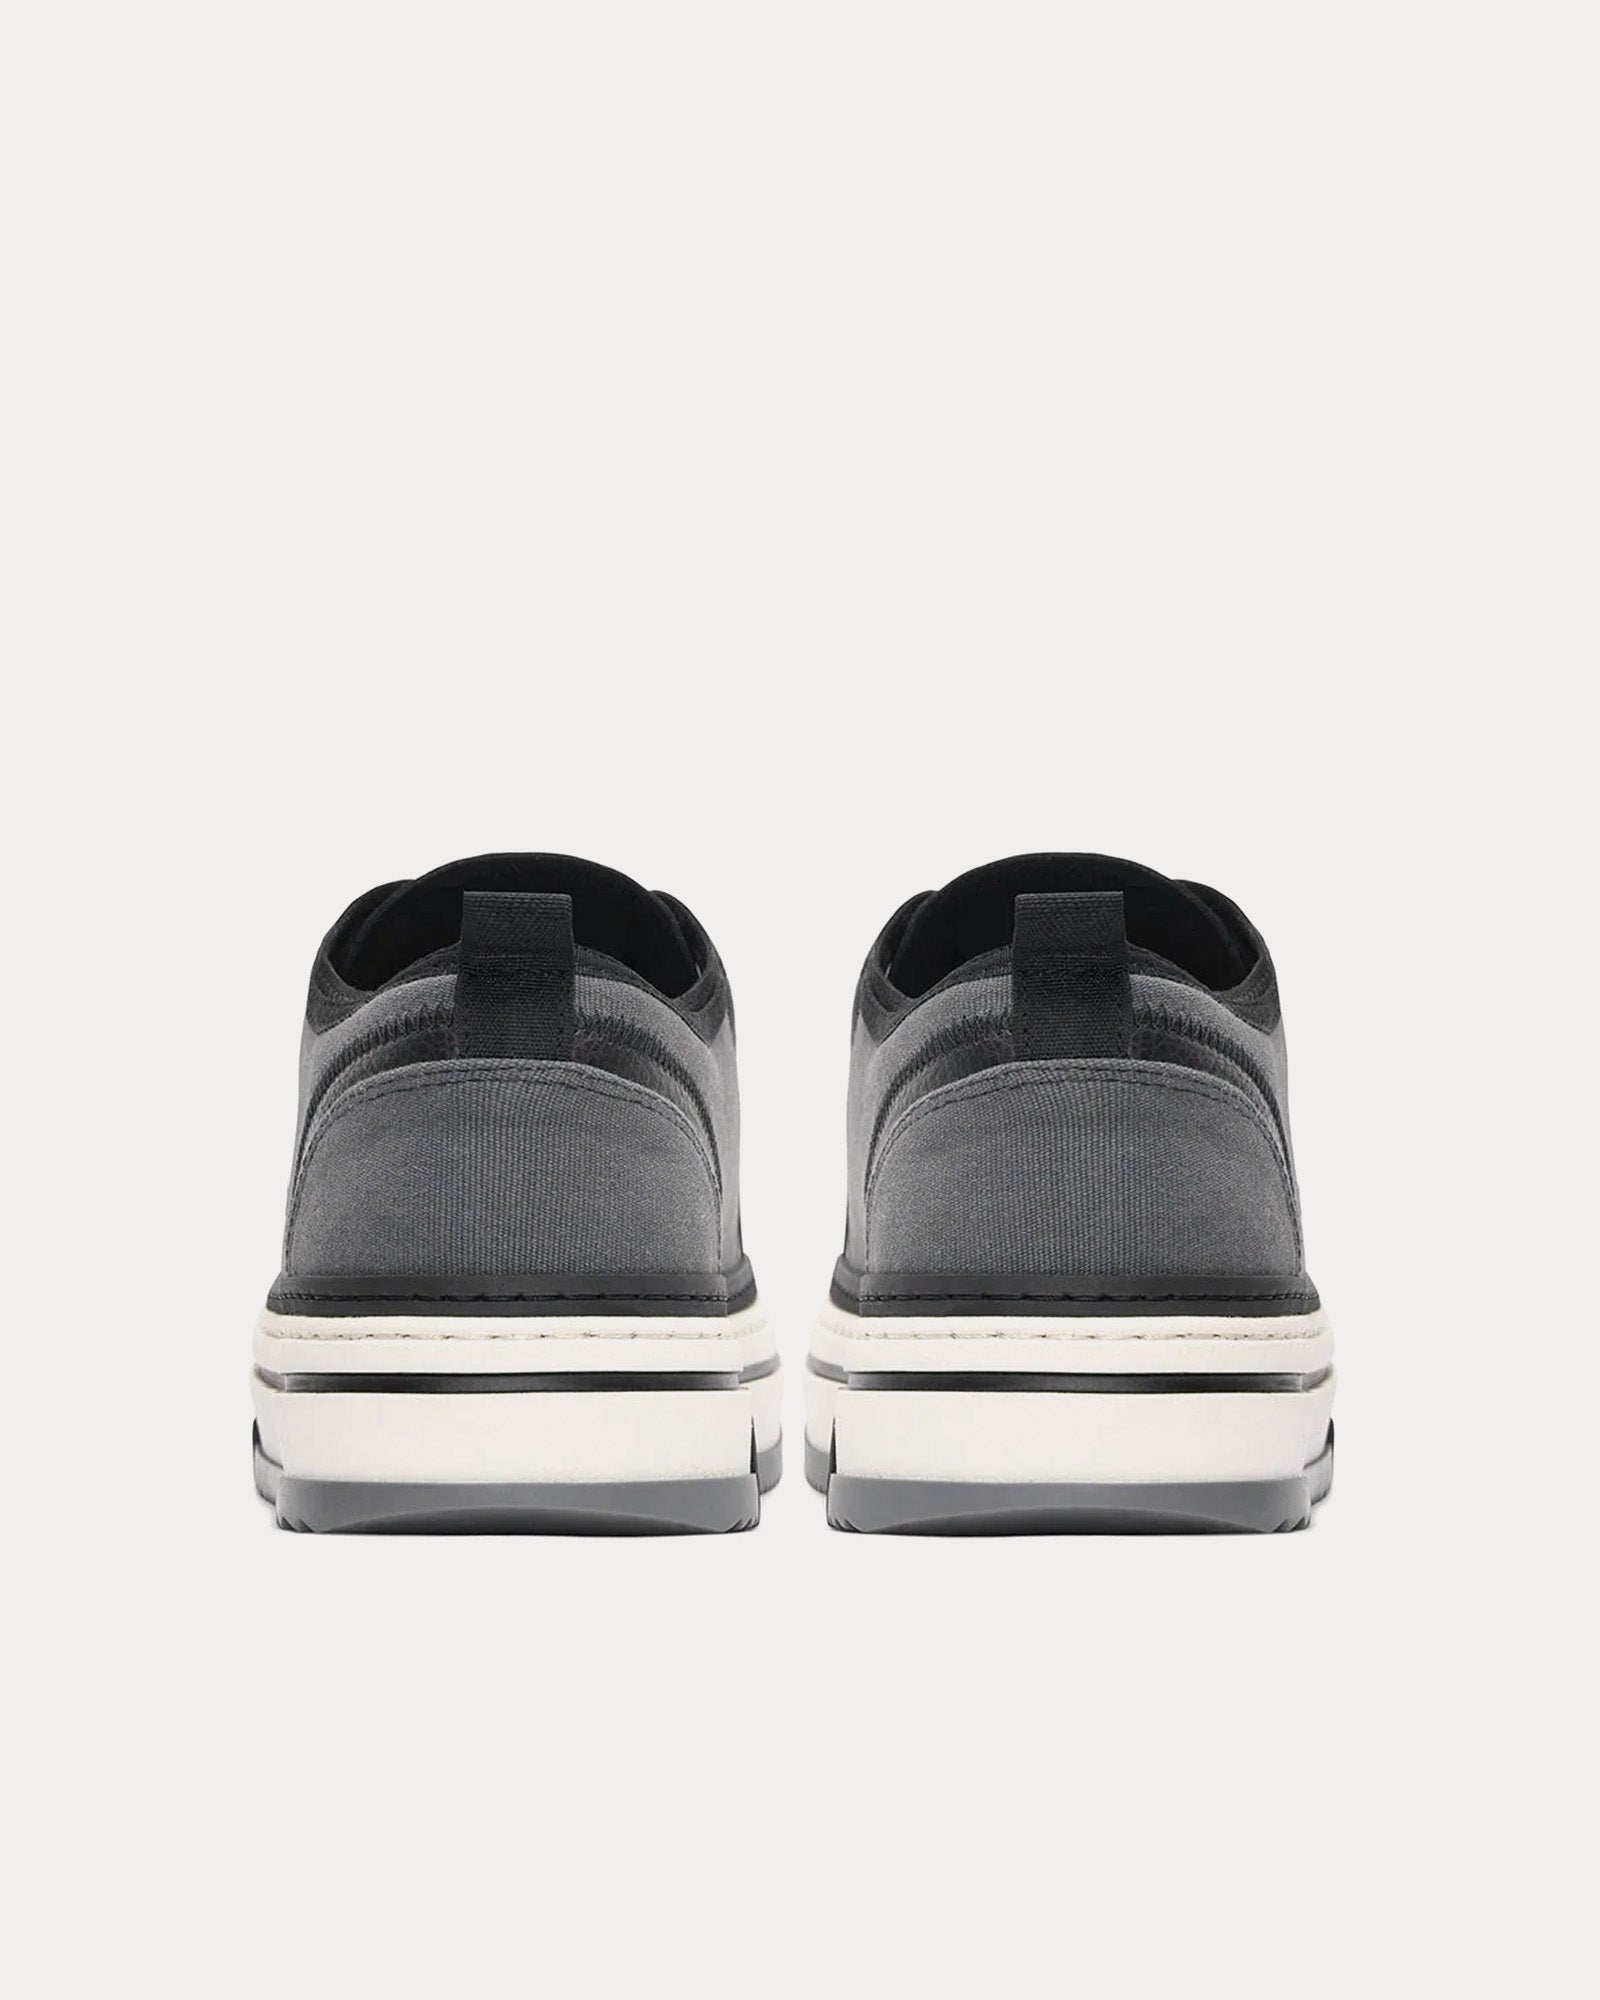 Represent - HTN X Low Black Textured Low Top Sneakers